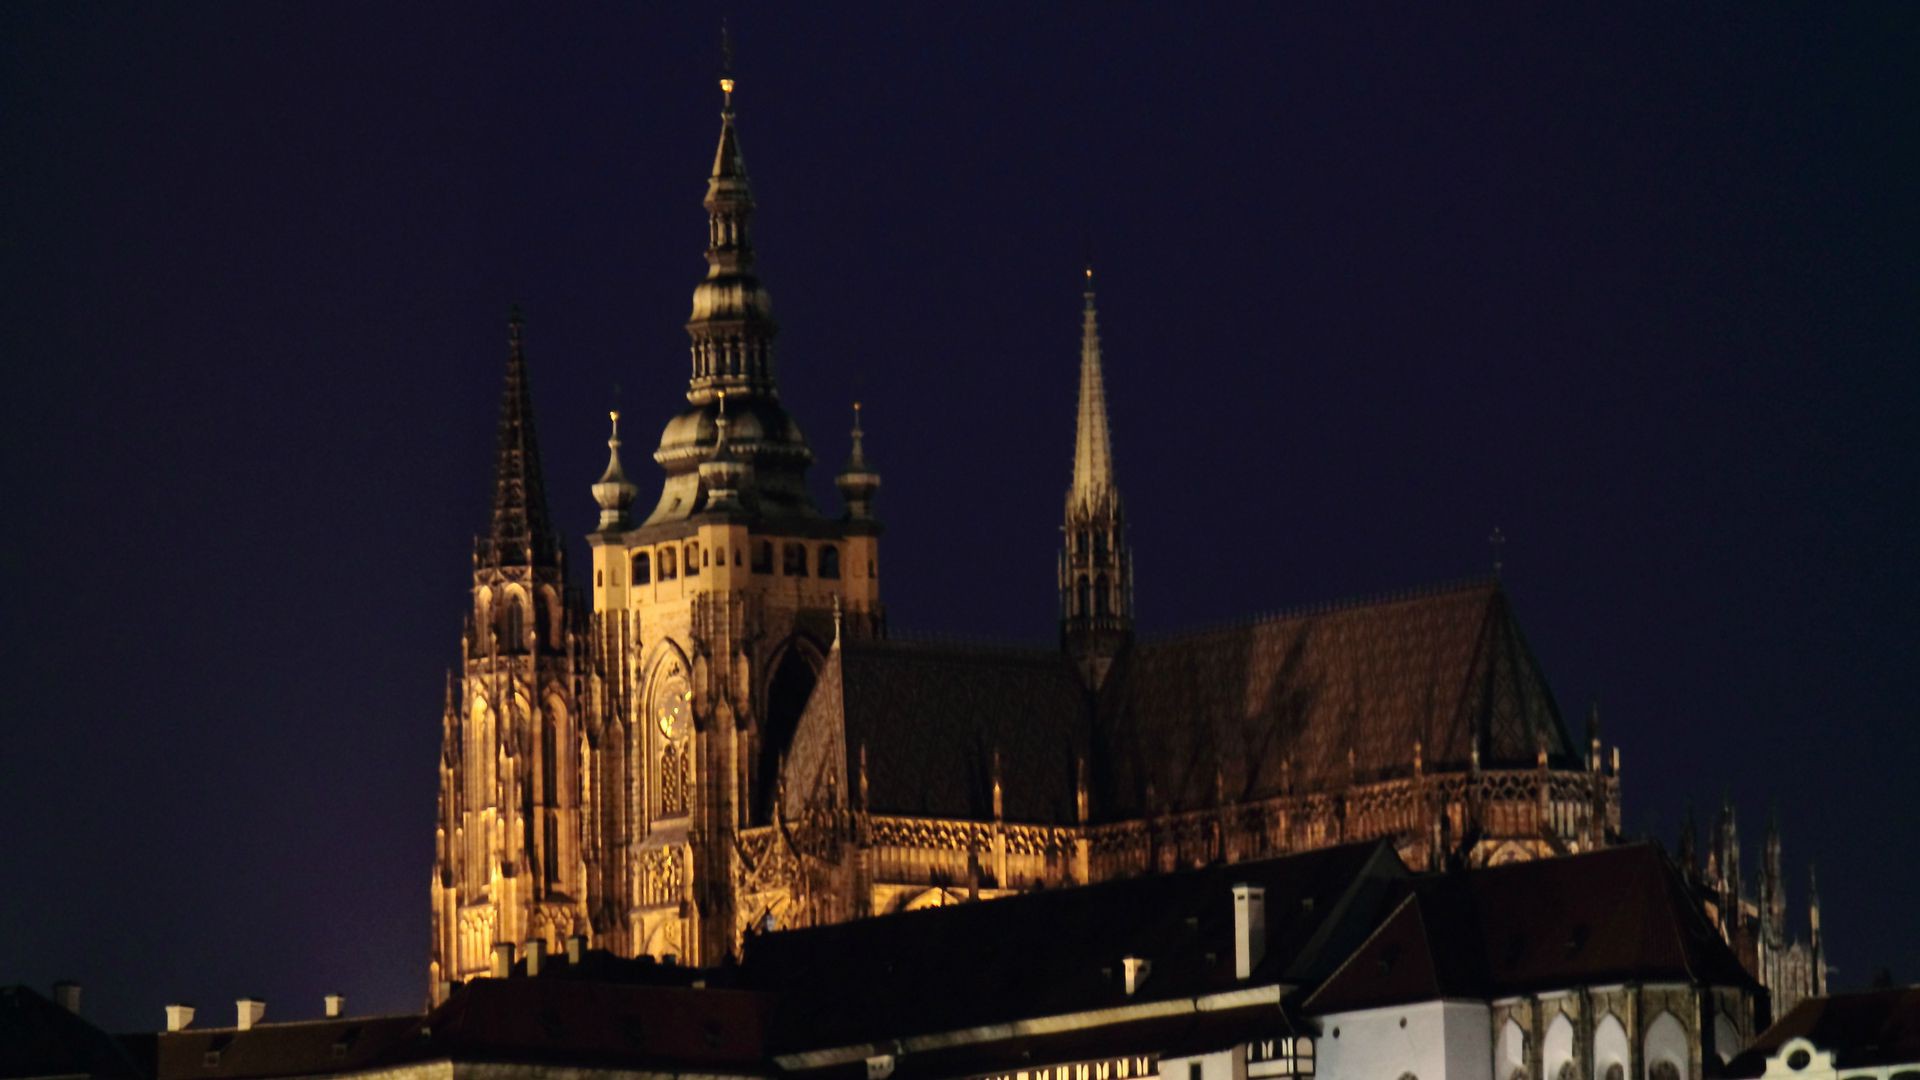 La cathédrale St-Guy de Prague restera aux mains de l'Etat (Photo:elPadawan/Flickr/CC BY-SA 2.0)